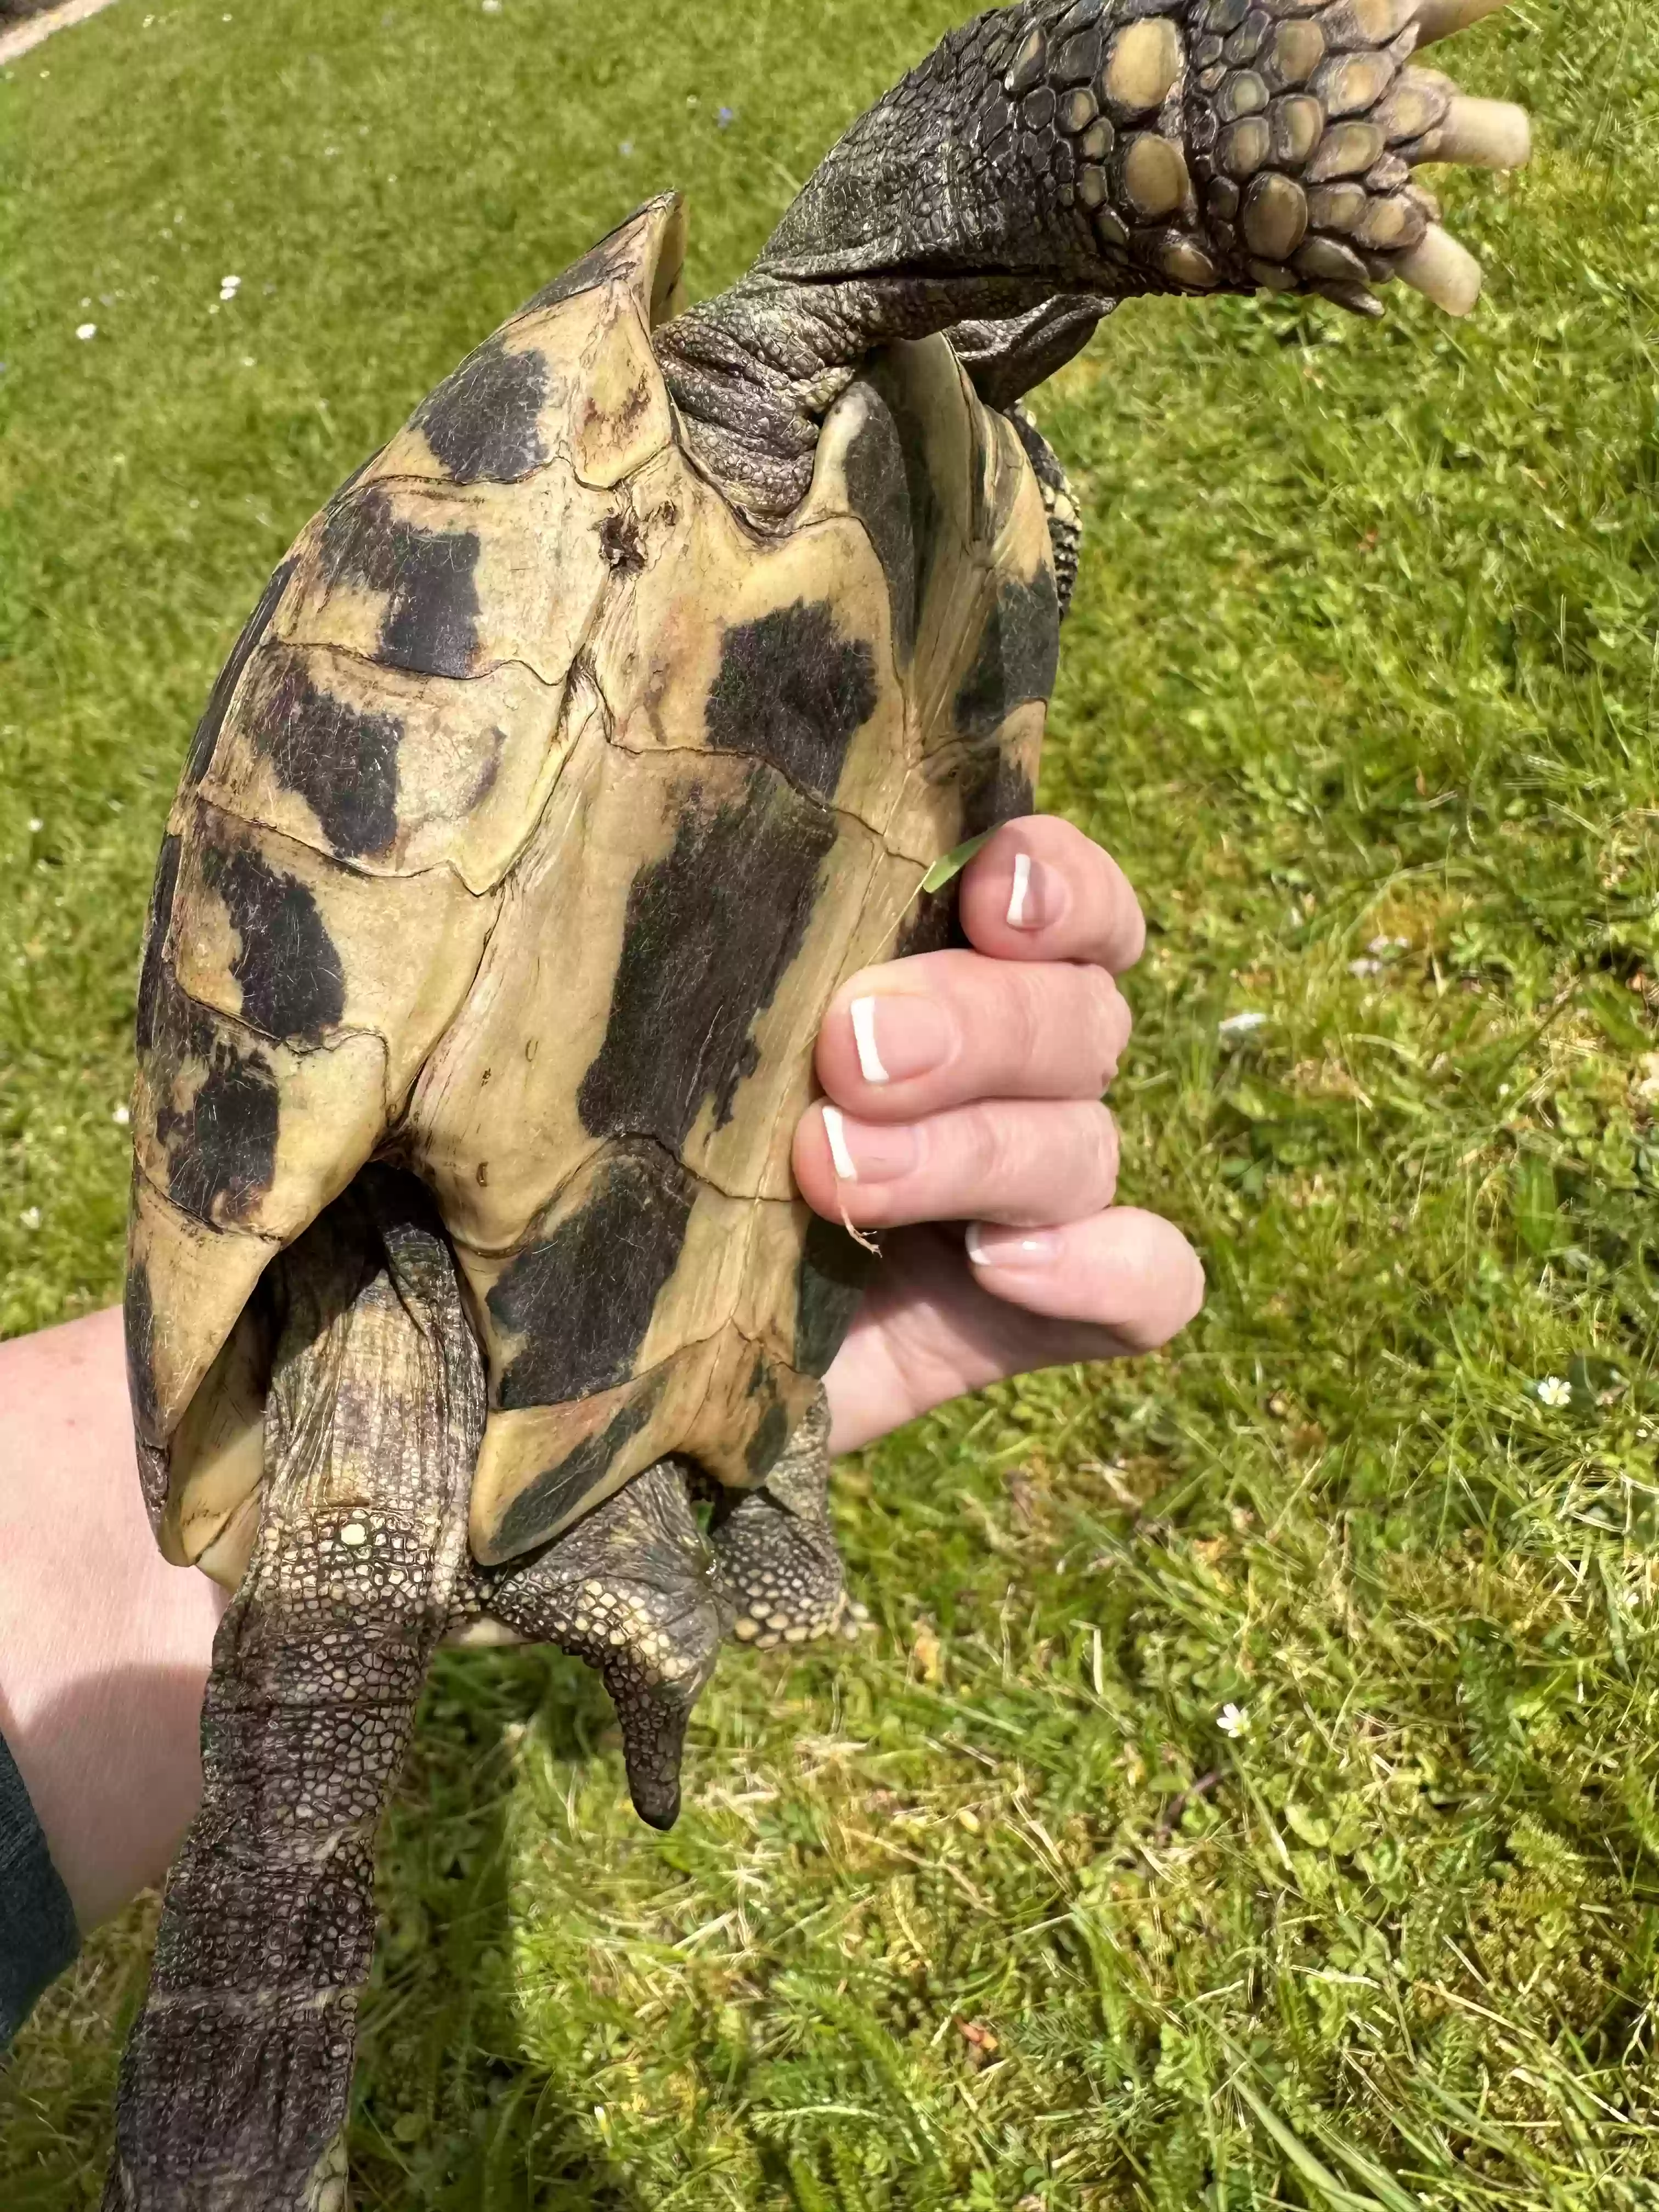 adoptable Reptile in Southampton,England named 